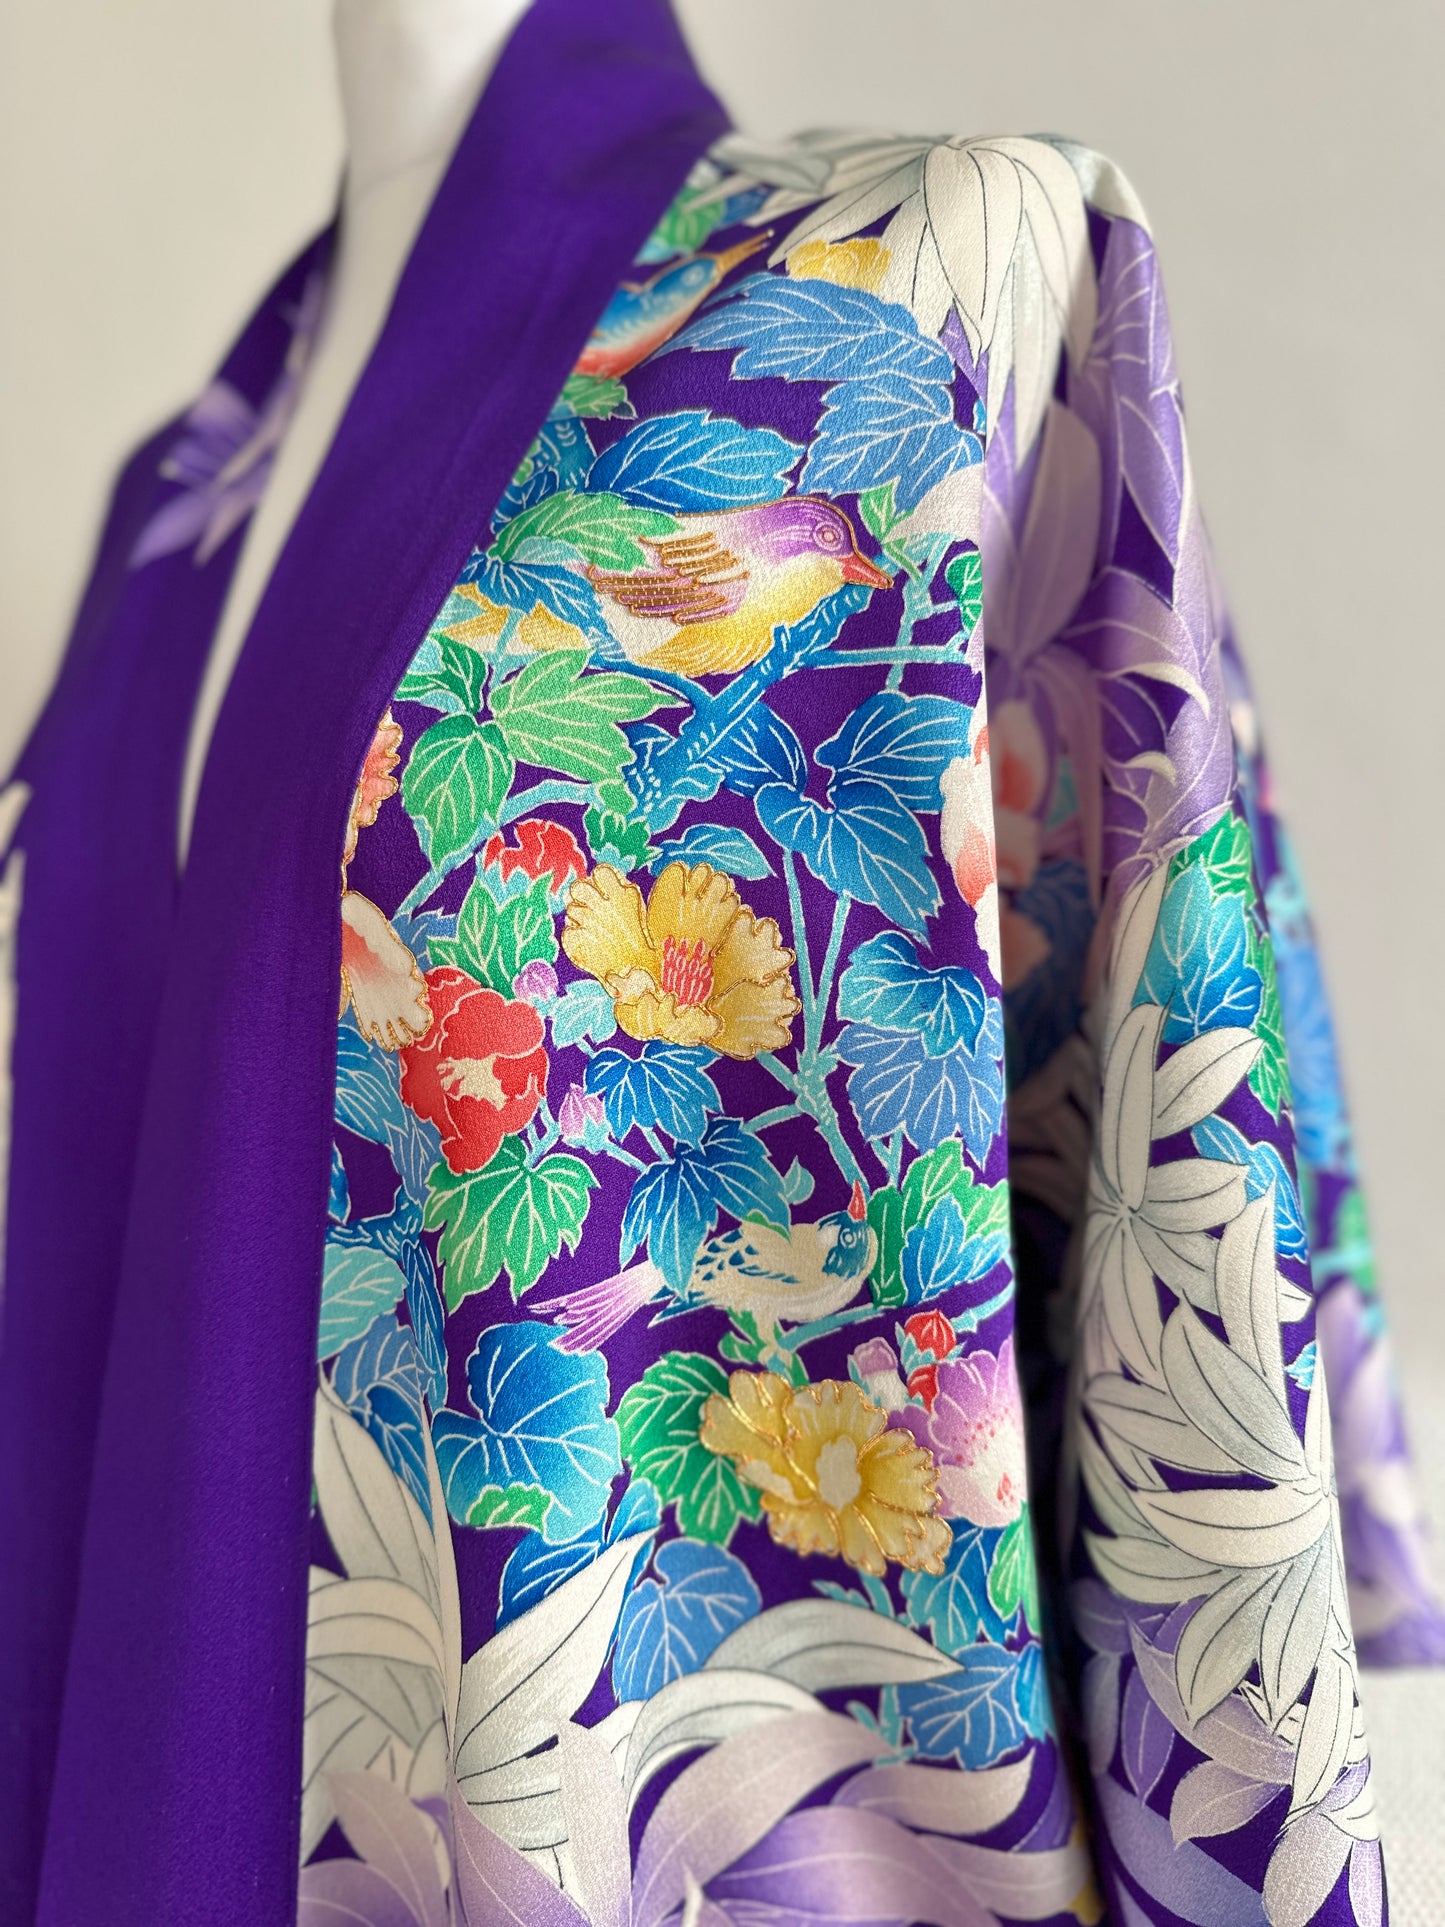 【Purpur, klassische Blumen】 Happi Jacke ＜ ausgezeichnet ・ Seide ＞ Für Männer, für Frauen, japanische Kimono, Japan Unisexesische Kleidung, Unisex, japanische Geschenke, Originaldesigns